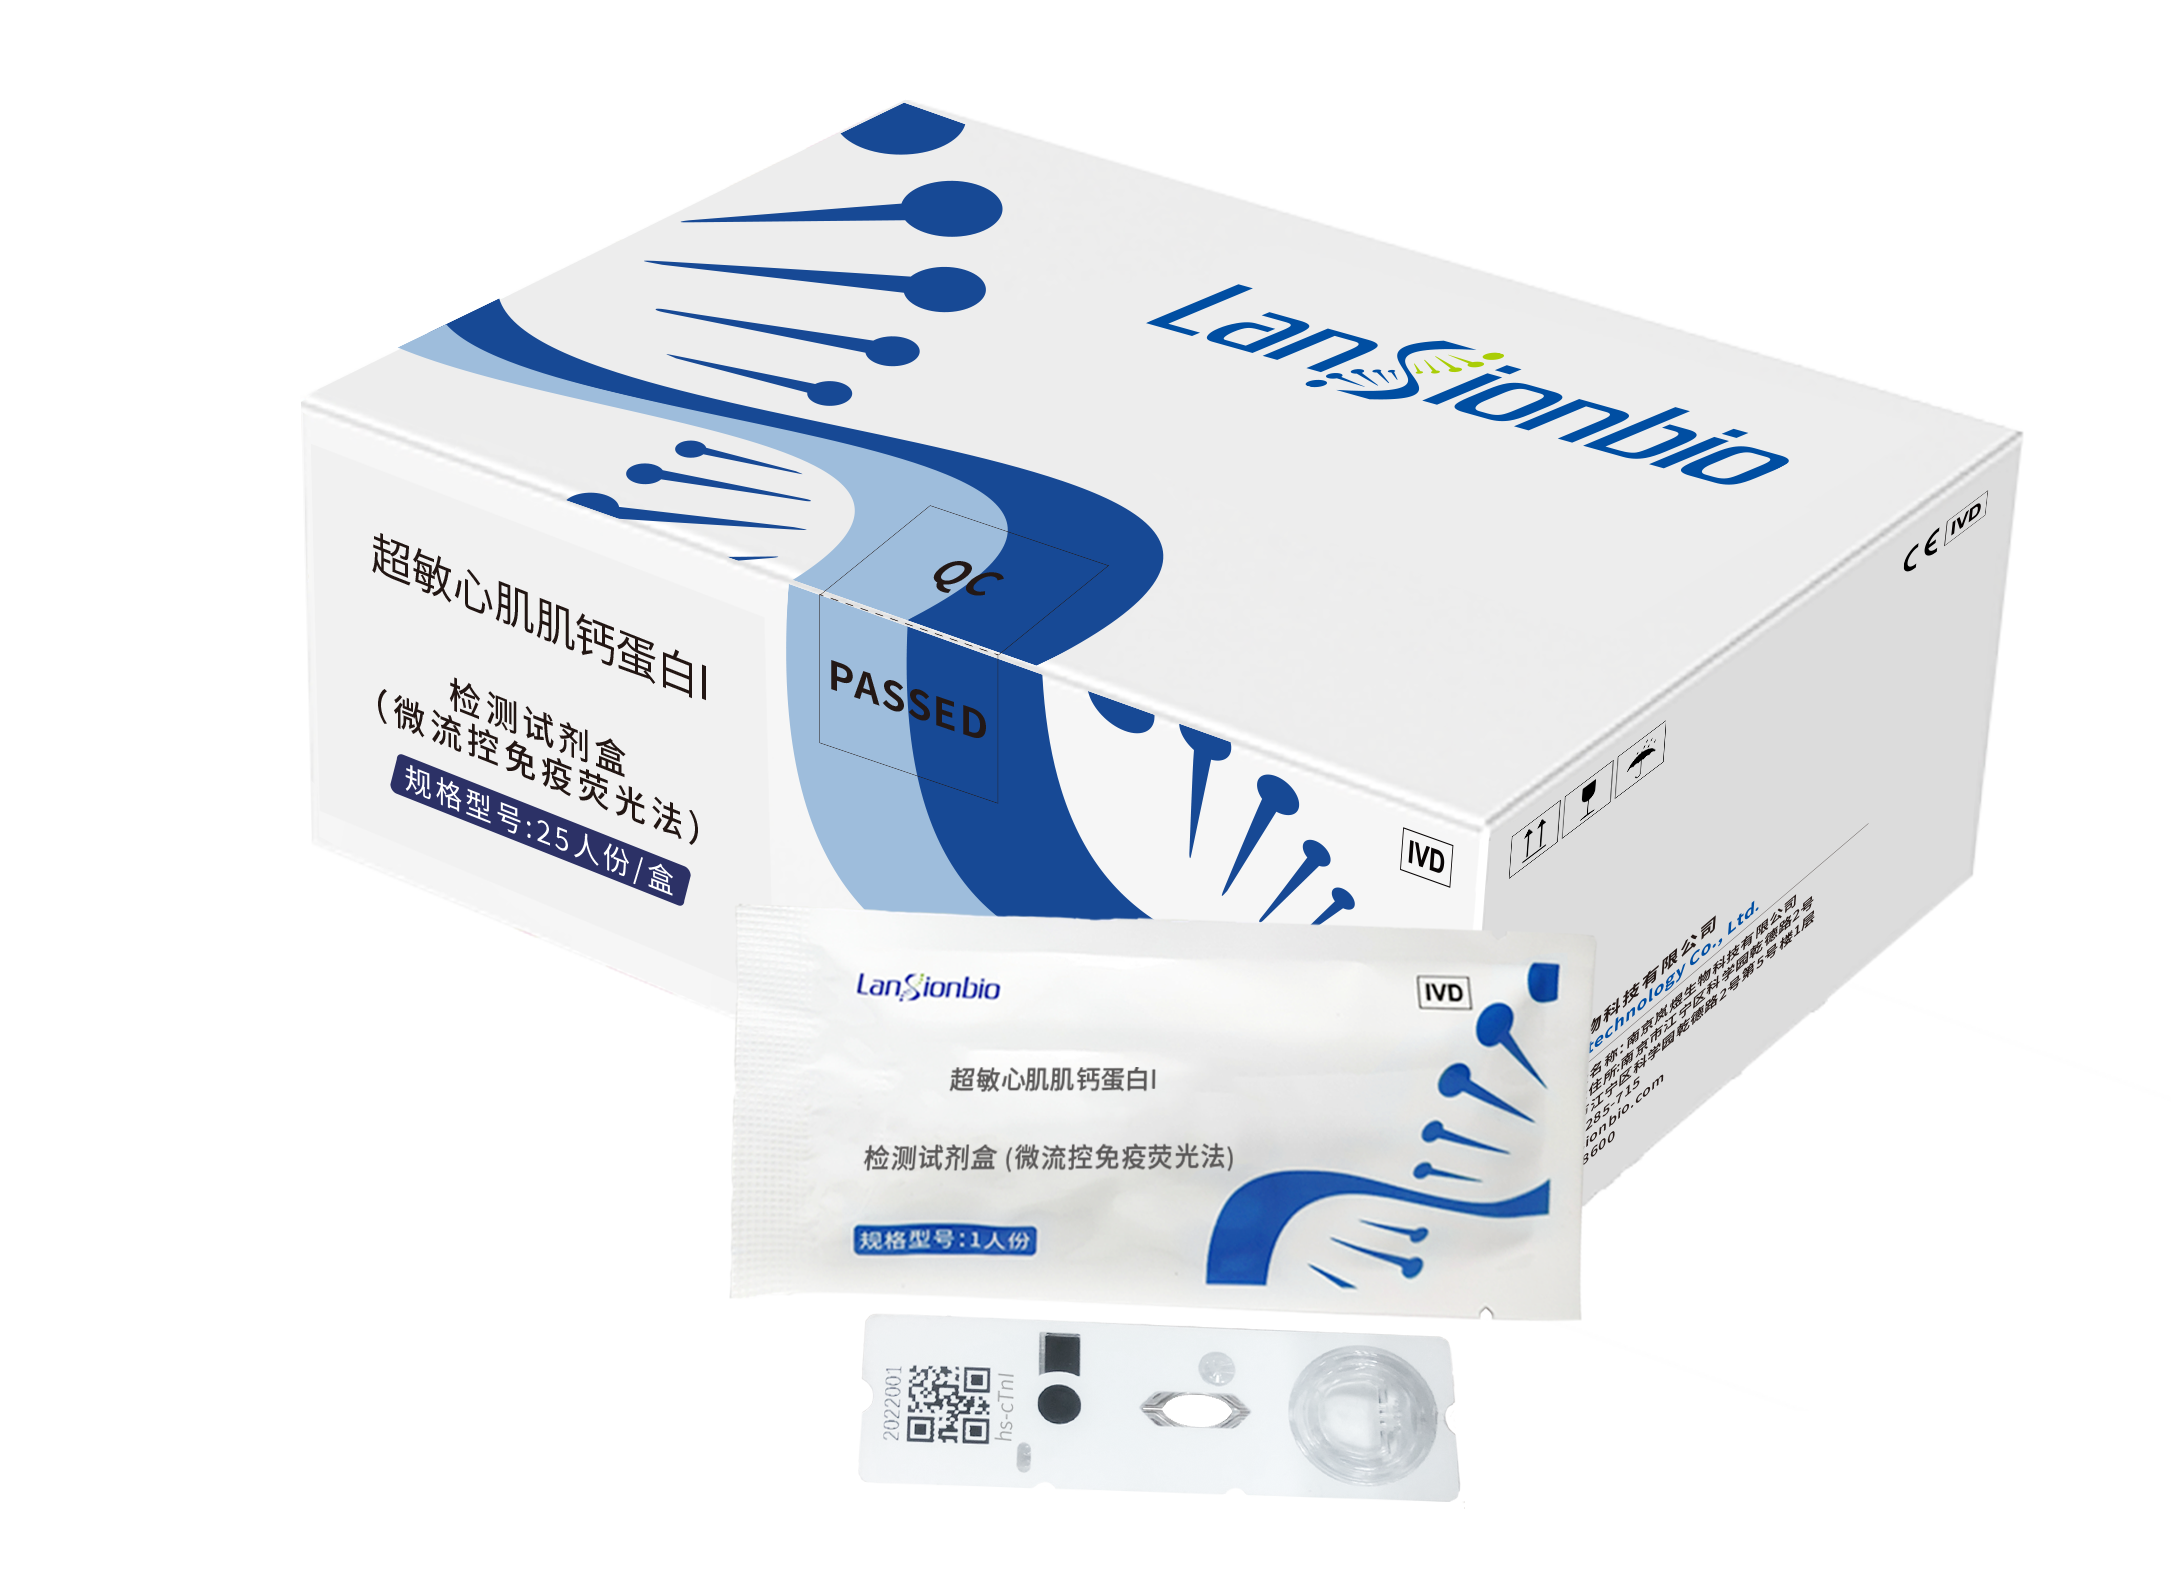 超敏心肌肌钙蛋白I检测试剂盒（微流控免疫荧光法）苏械注准20212401519